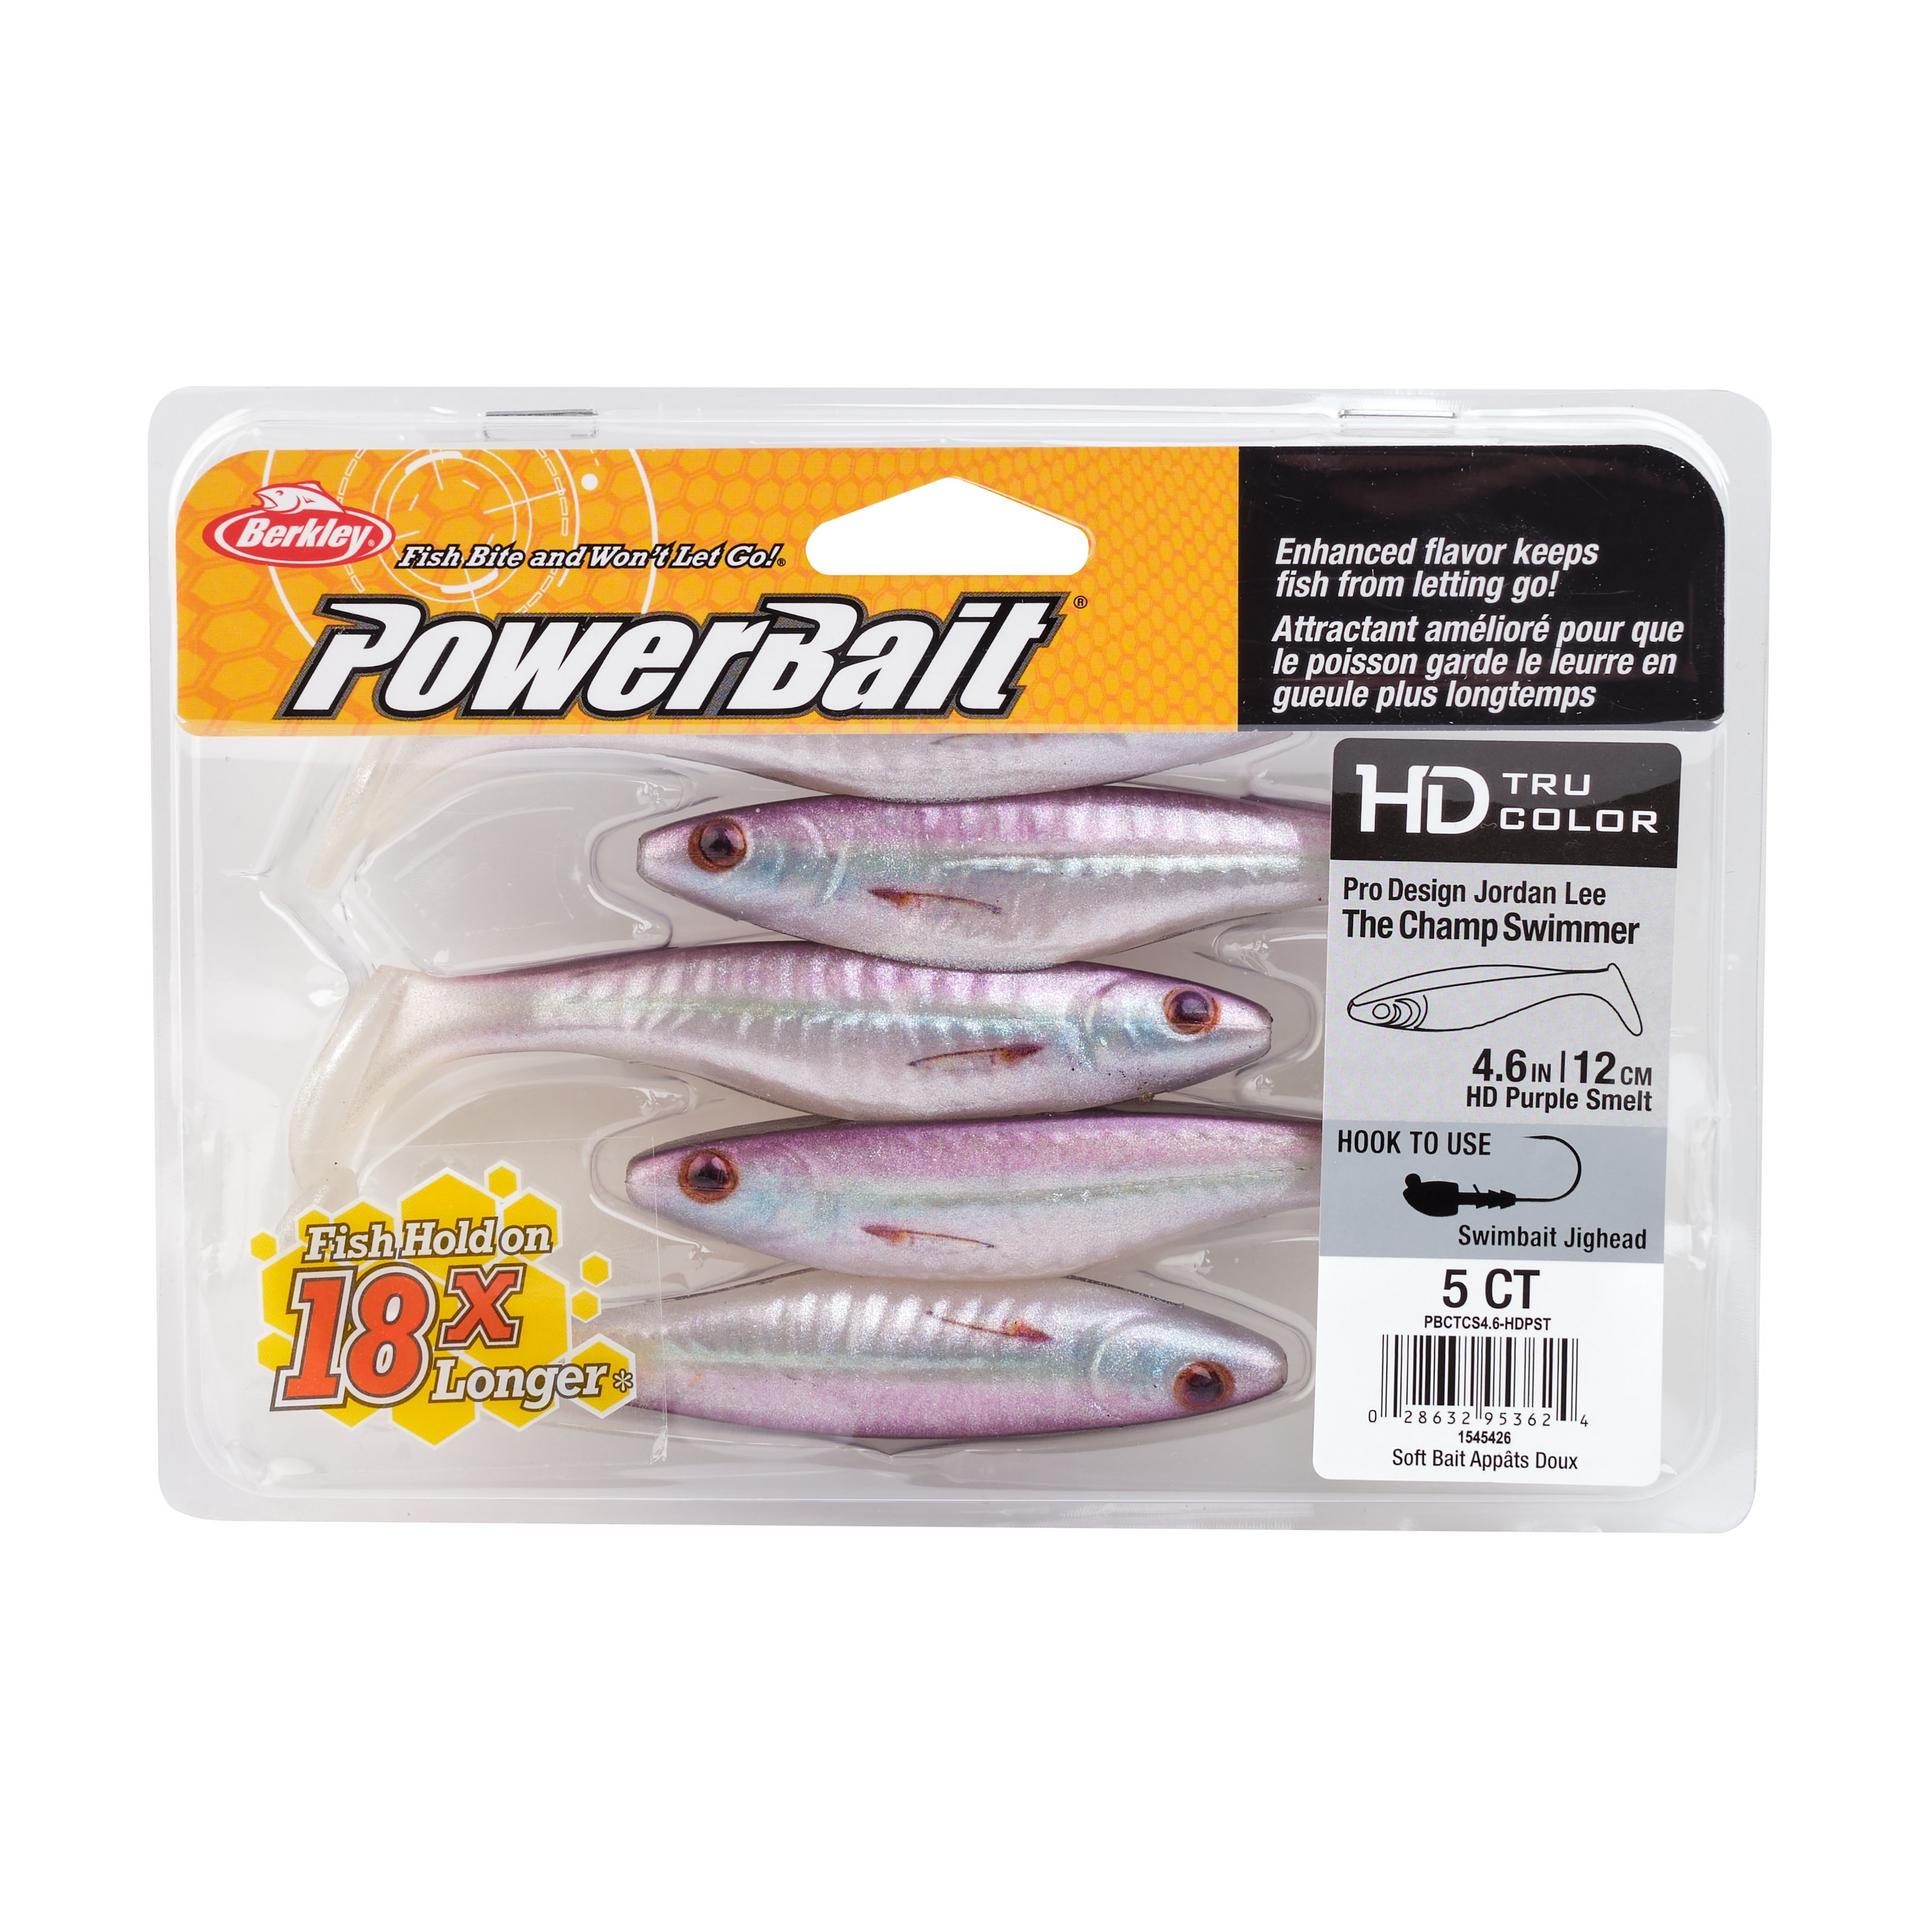 PowerBaitTheChampSwimmer HDPurpleSmelt 4.6in PKG | Berkley Fishing